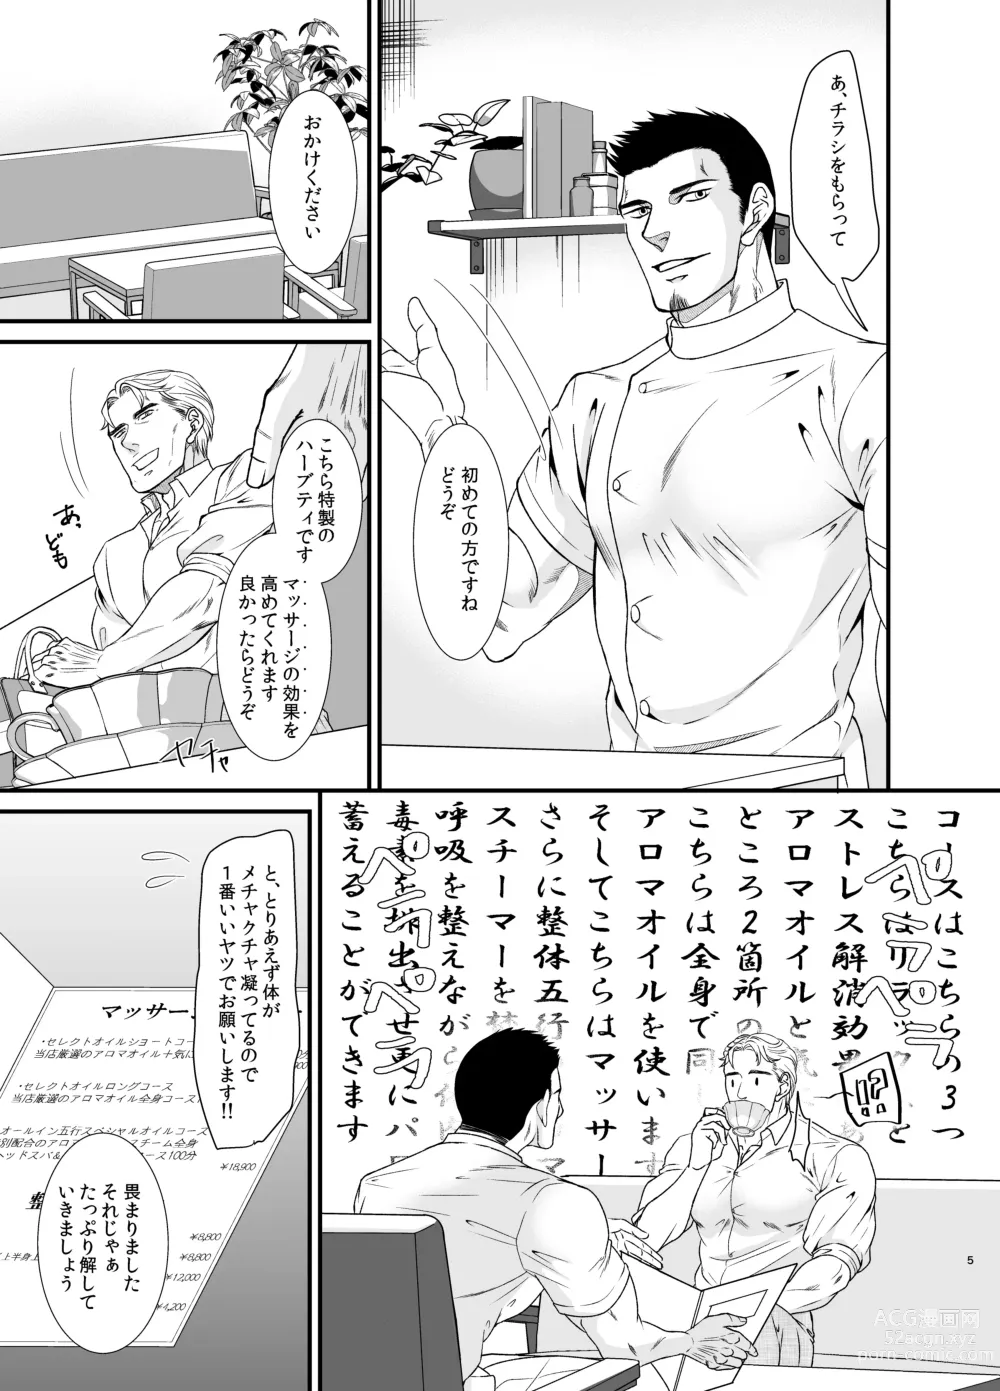 Page 4 of doujinshi Feeling Good